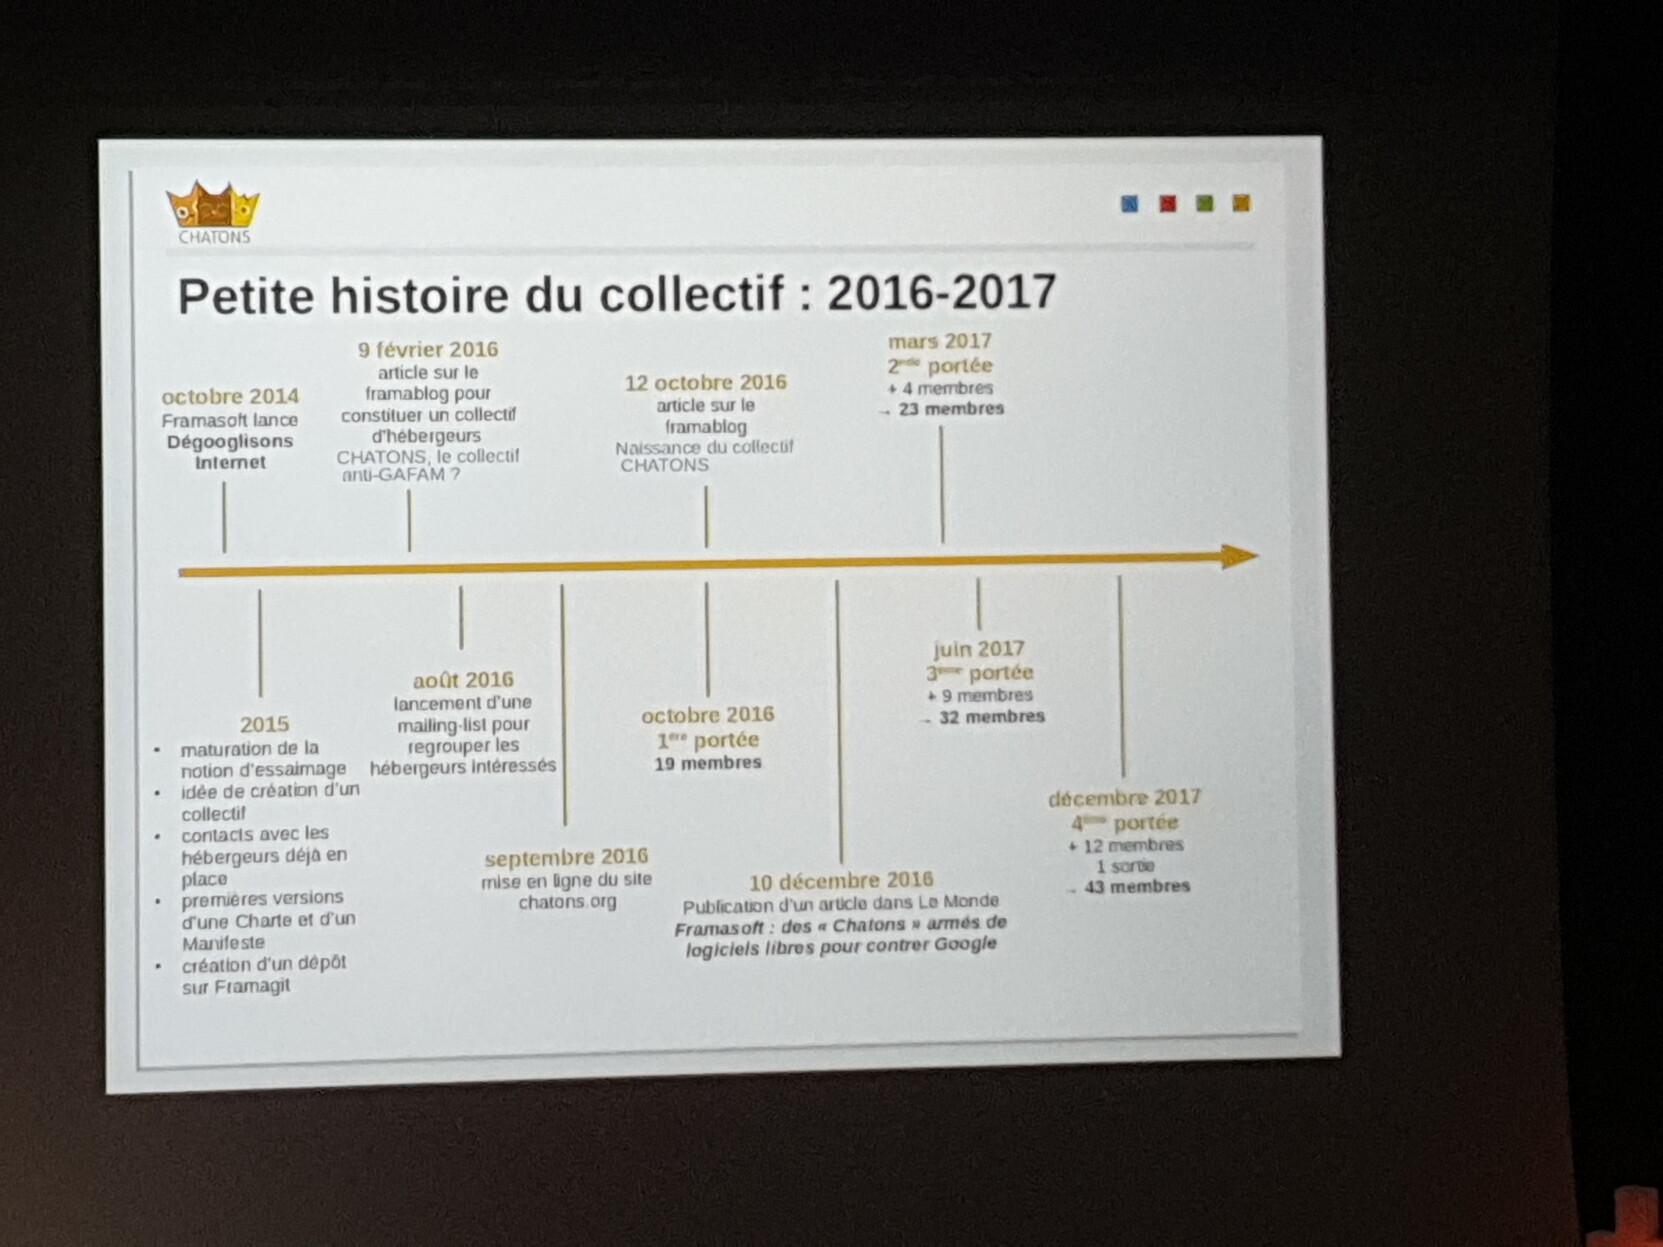 Diapo sur l'histoire du collectif de 2016-2017